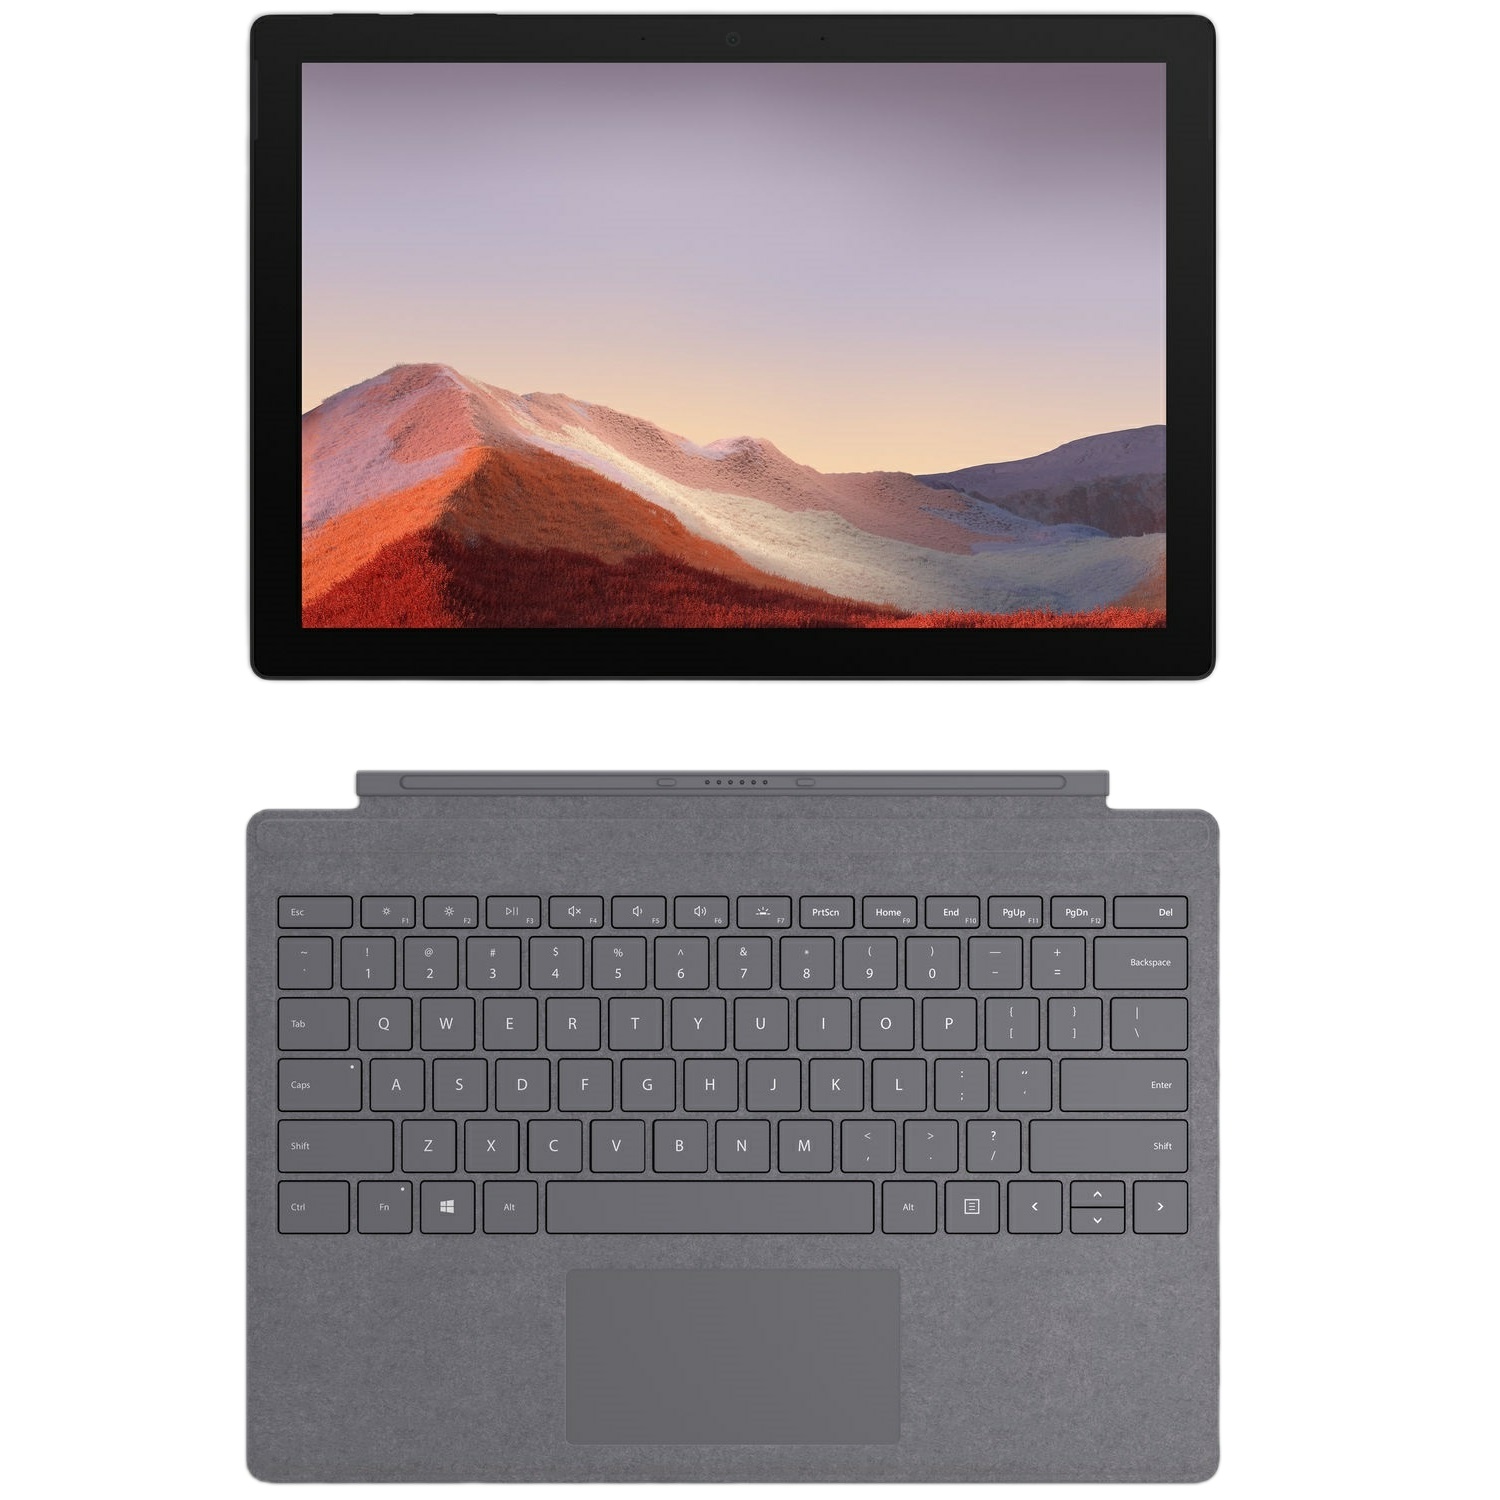 فروش نقدی و اقساطی تبلت مایکروسافت مدل Surface Pro 7 Plus - LTE ظرفیت 128 گیگابایت به همراه کیبورد Signature Type Cover